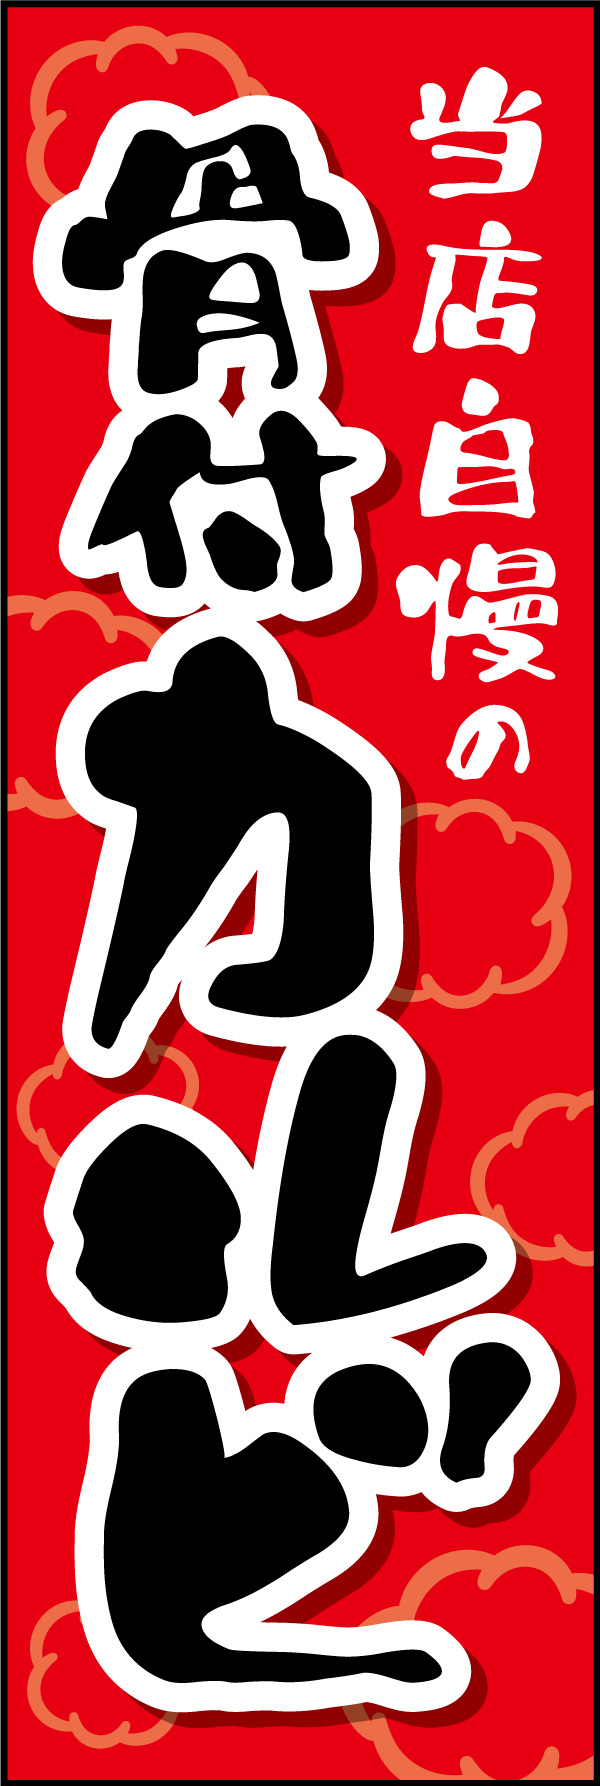 骨付きカルビ 01 「骨付きカルビ 」ののぼりです。がっつり食べれて美味しい焼肉屋をイメージし、力強い書体を使用してデザインしました。(Y.M)